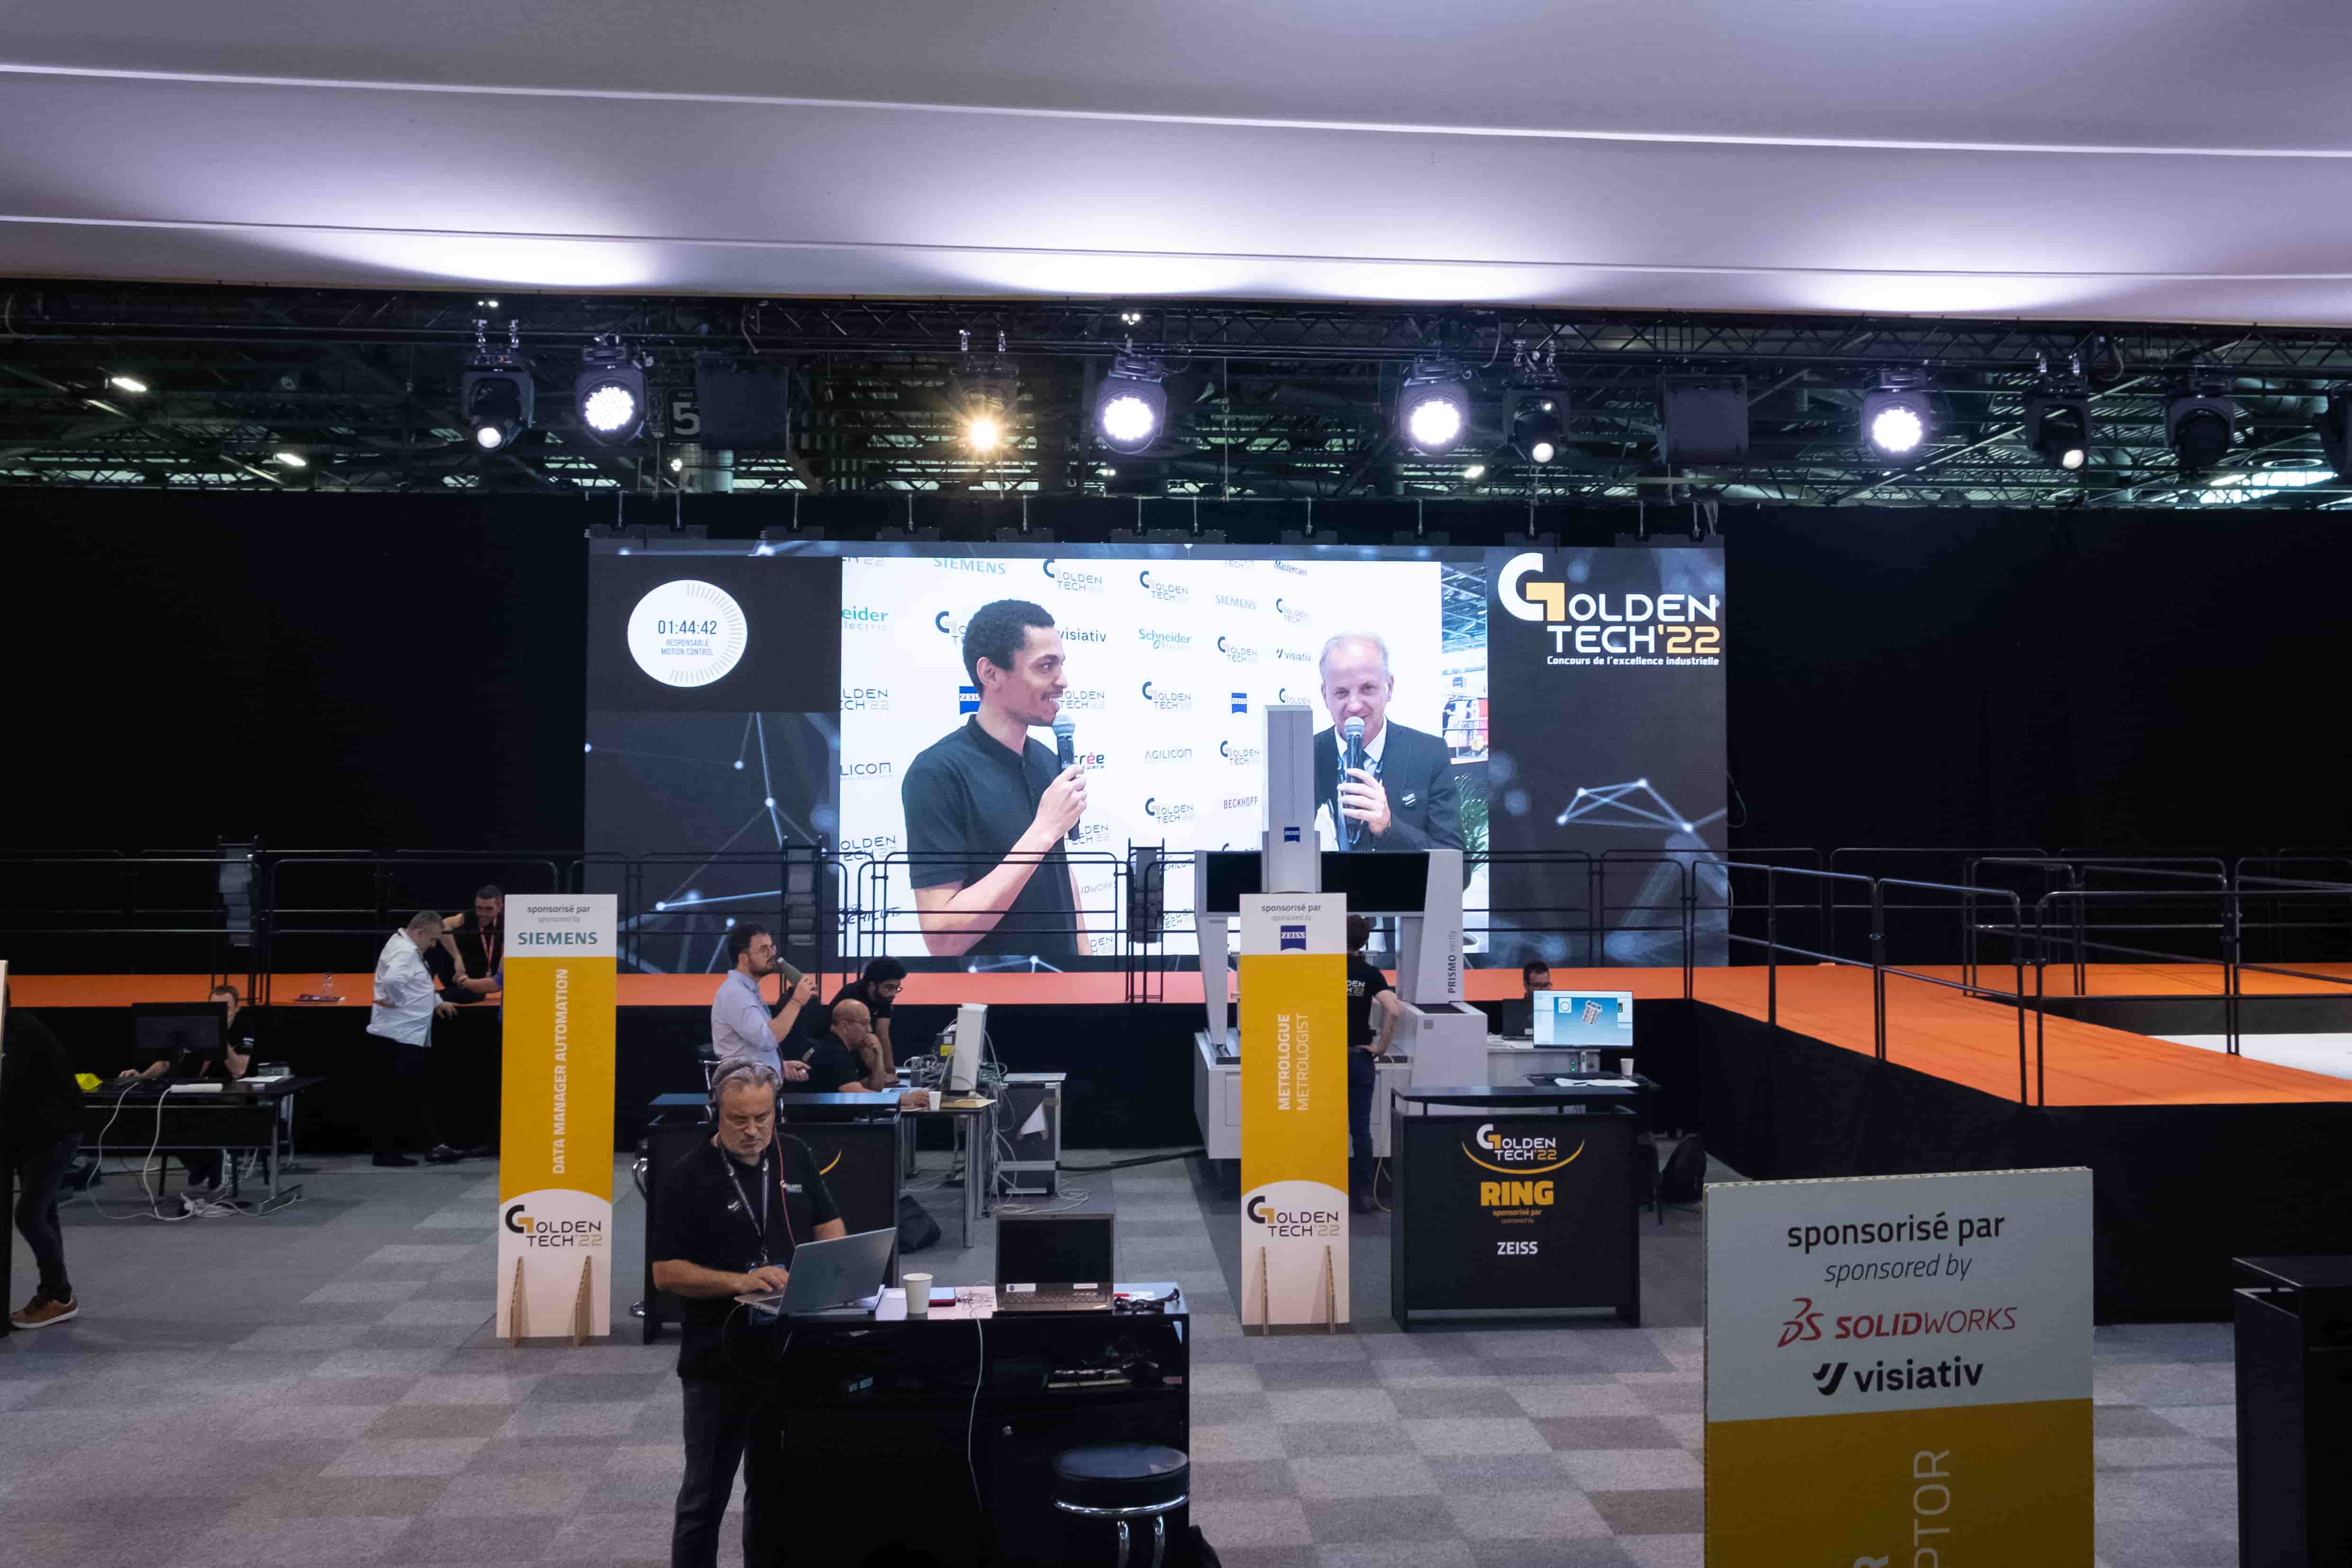 Stand Golden Tech avec un écran géant en fond où est diffusée l'interview d'un participant au concours par le présentateur.